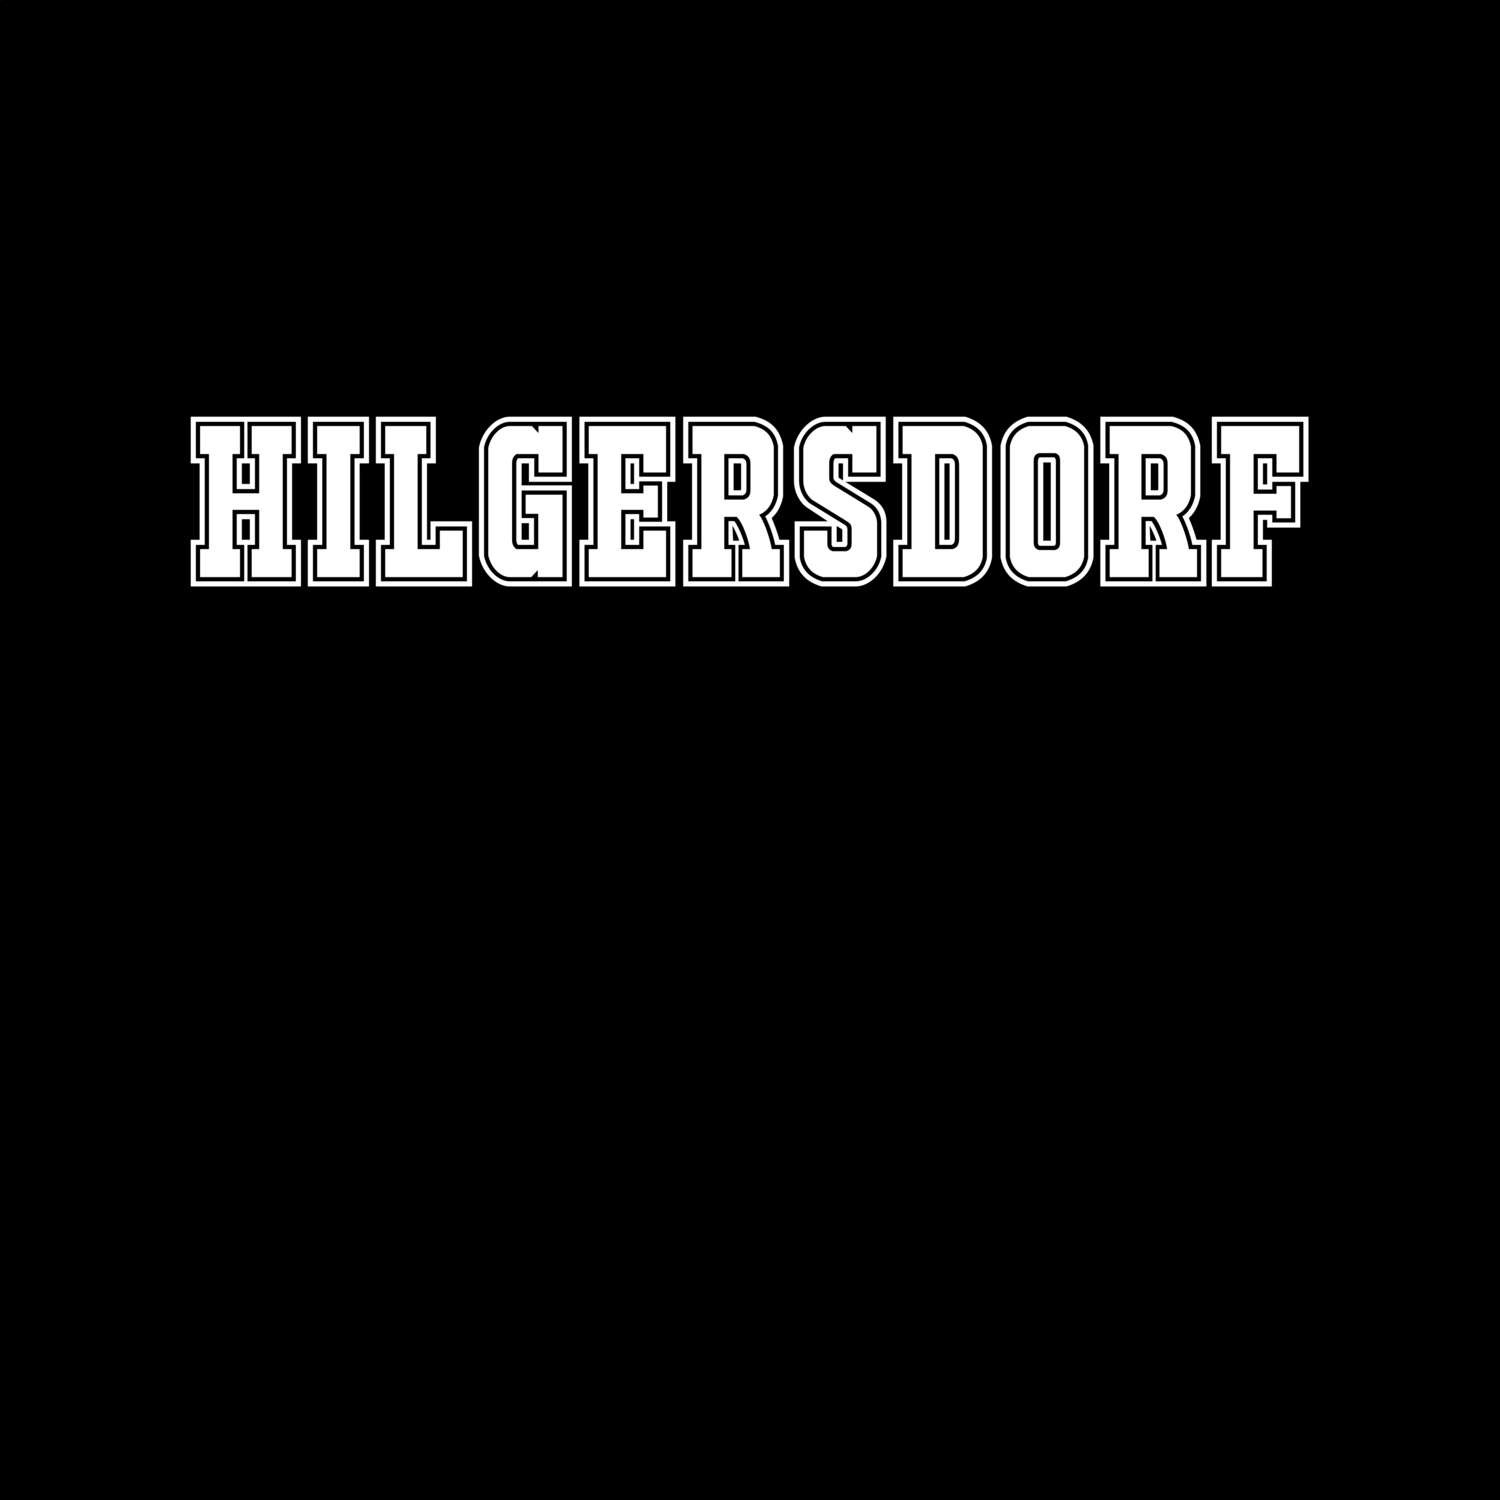 Hilgersdorf T-Shirt »Classic«